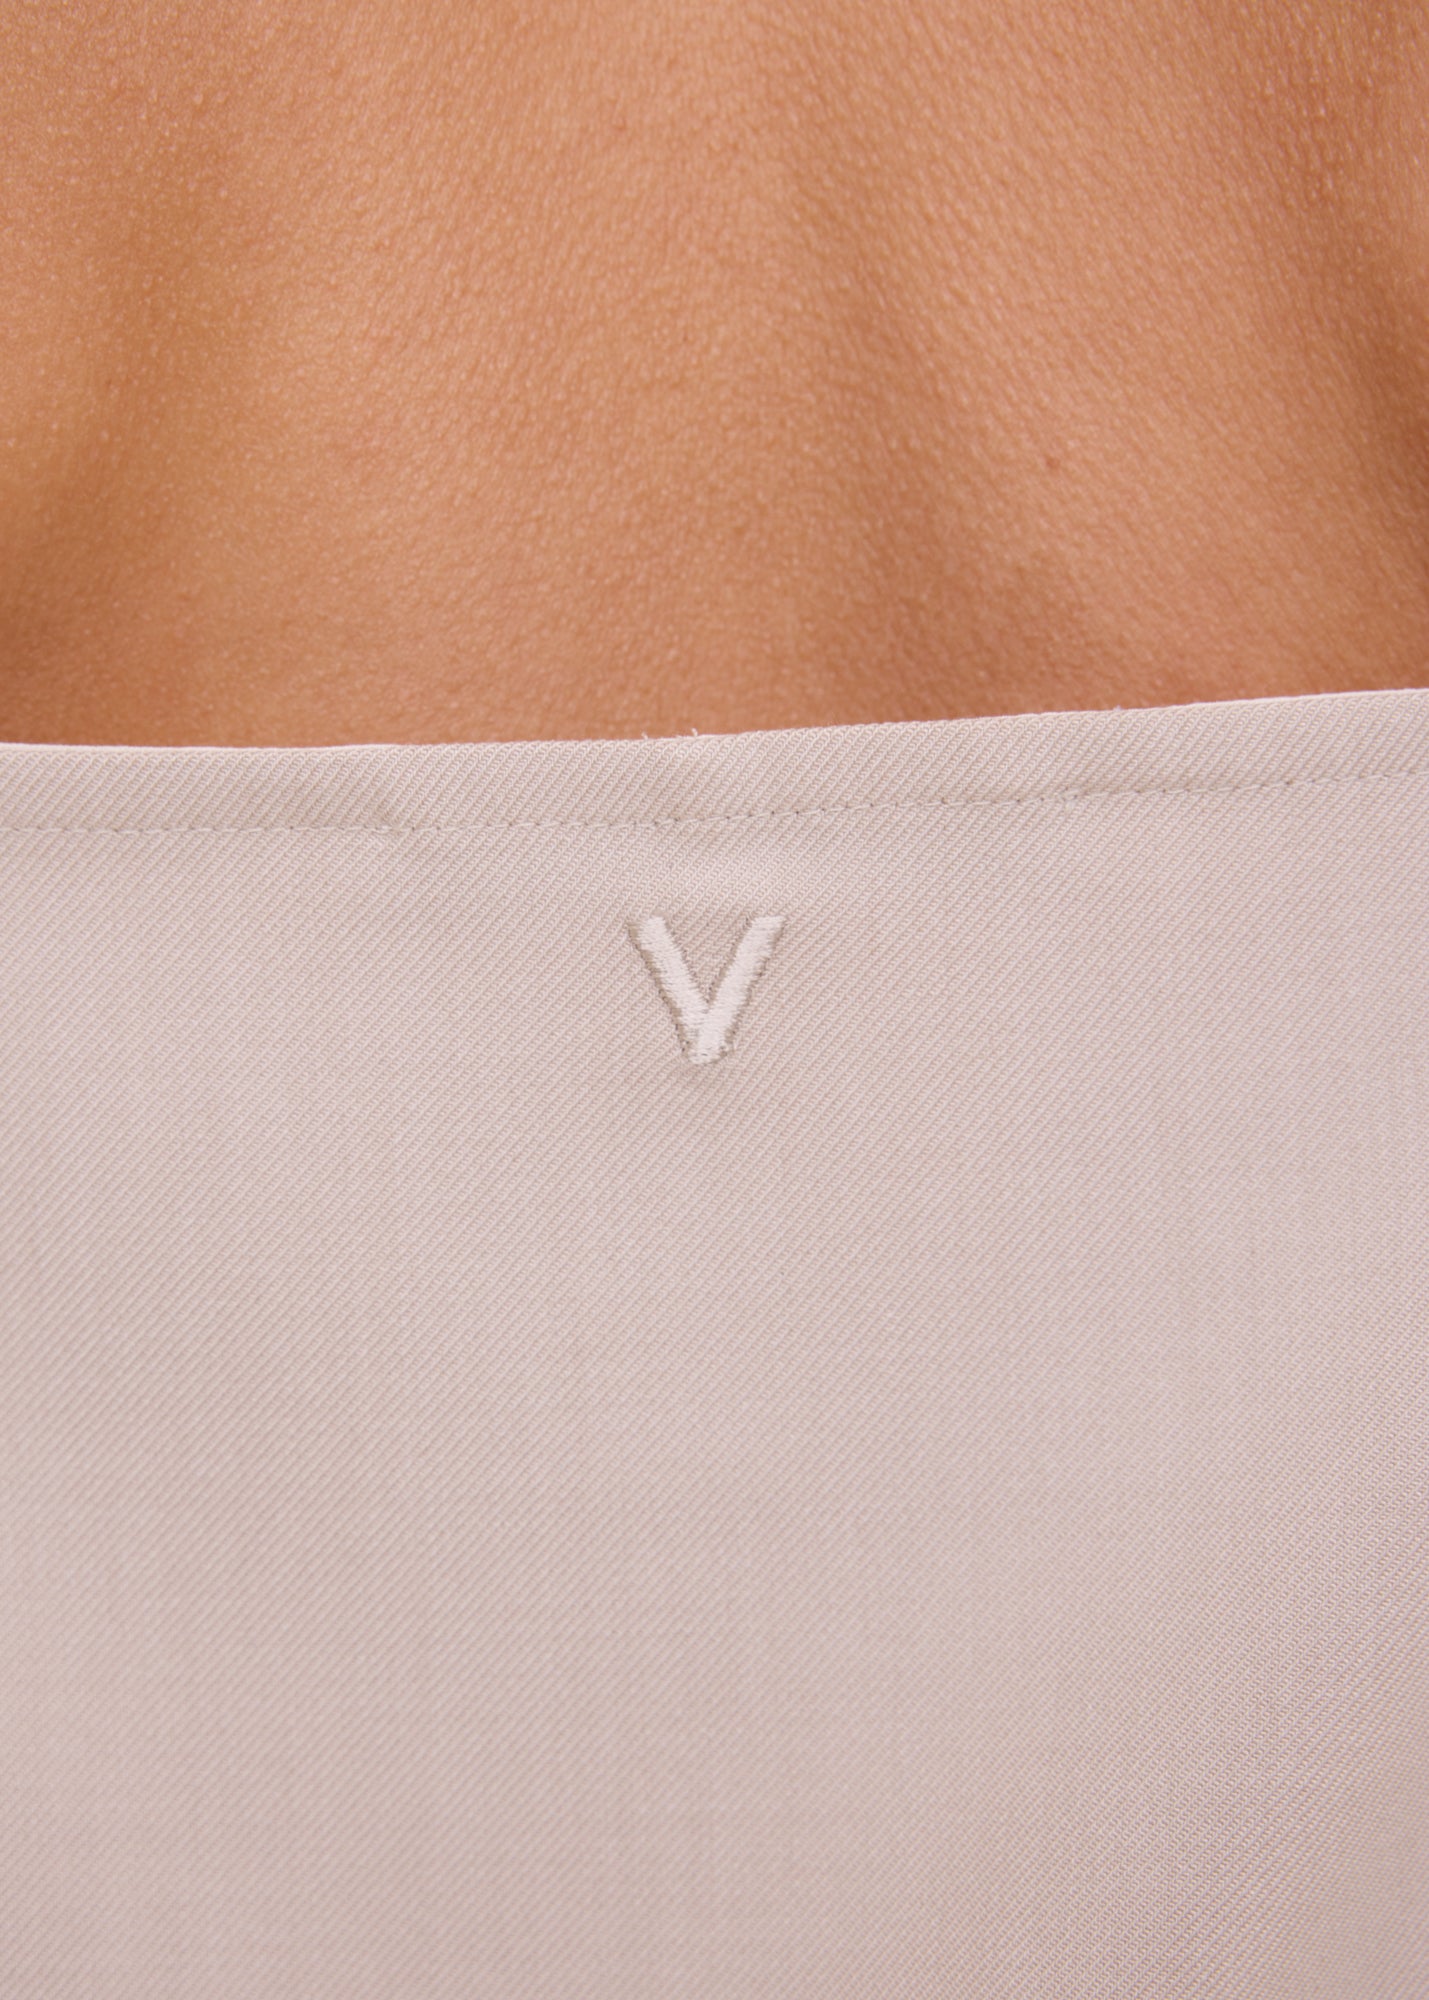 V-shape viscose singlet